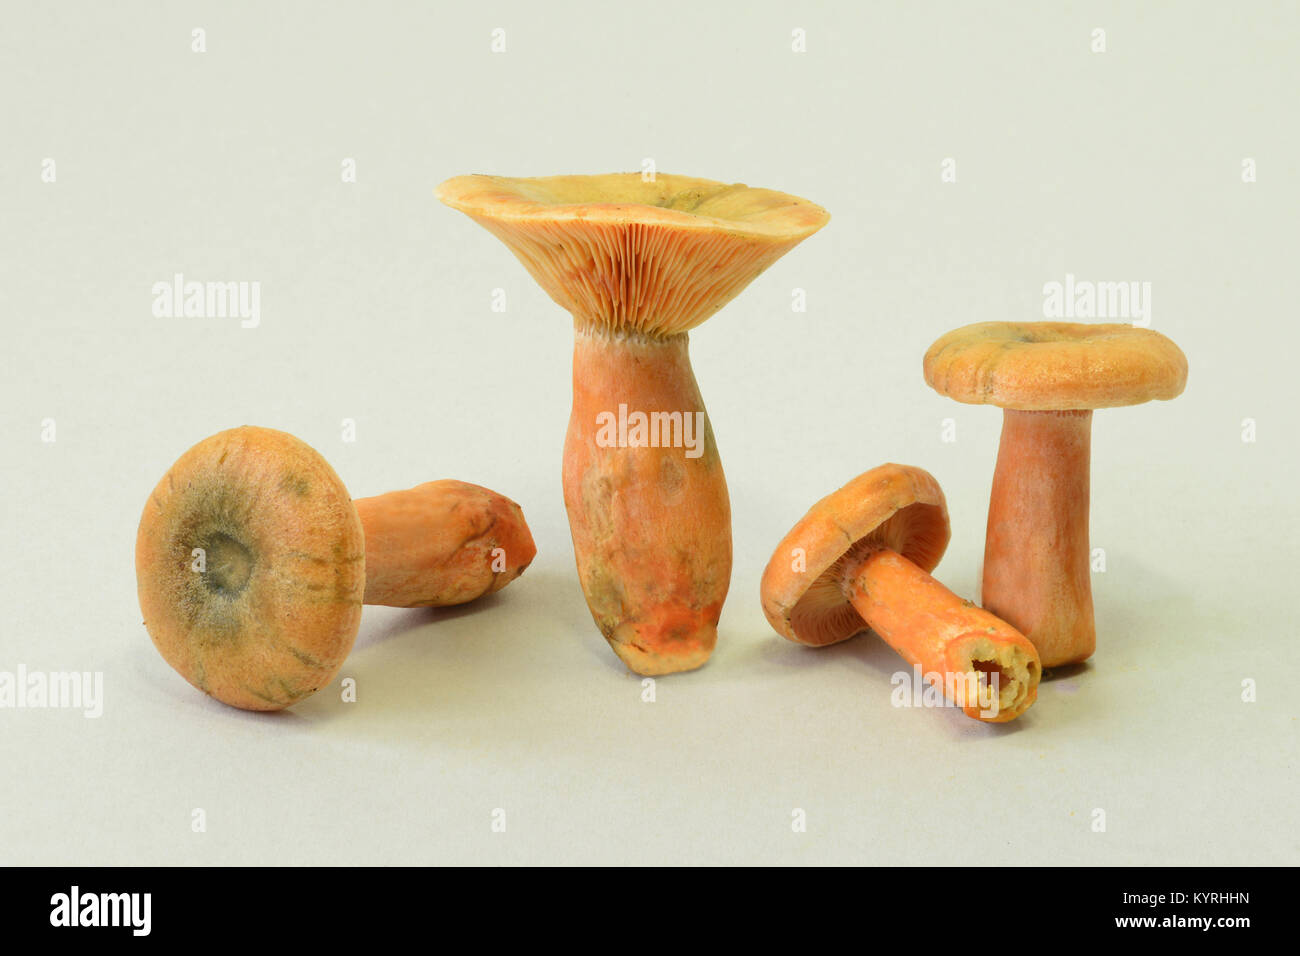 Falscher Safran Milkcap, Orange Milkcap (Lactarius deterrimus), Pilze, studio Bild Stockfoto